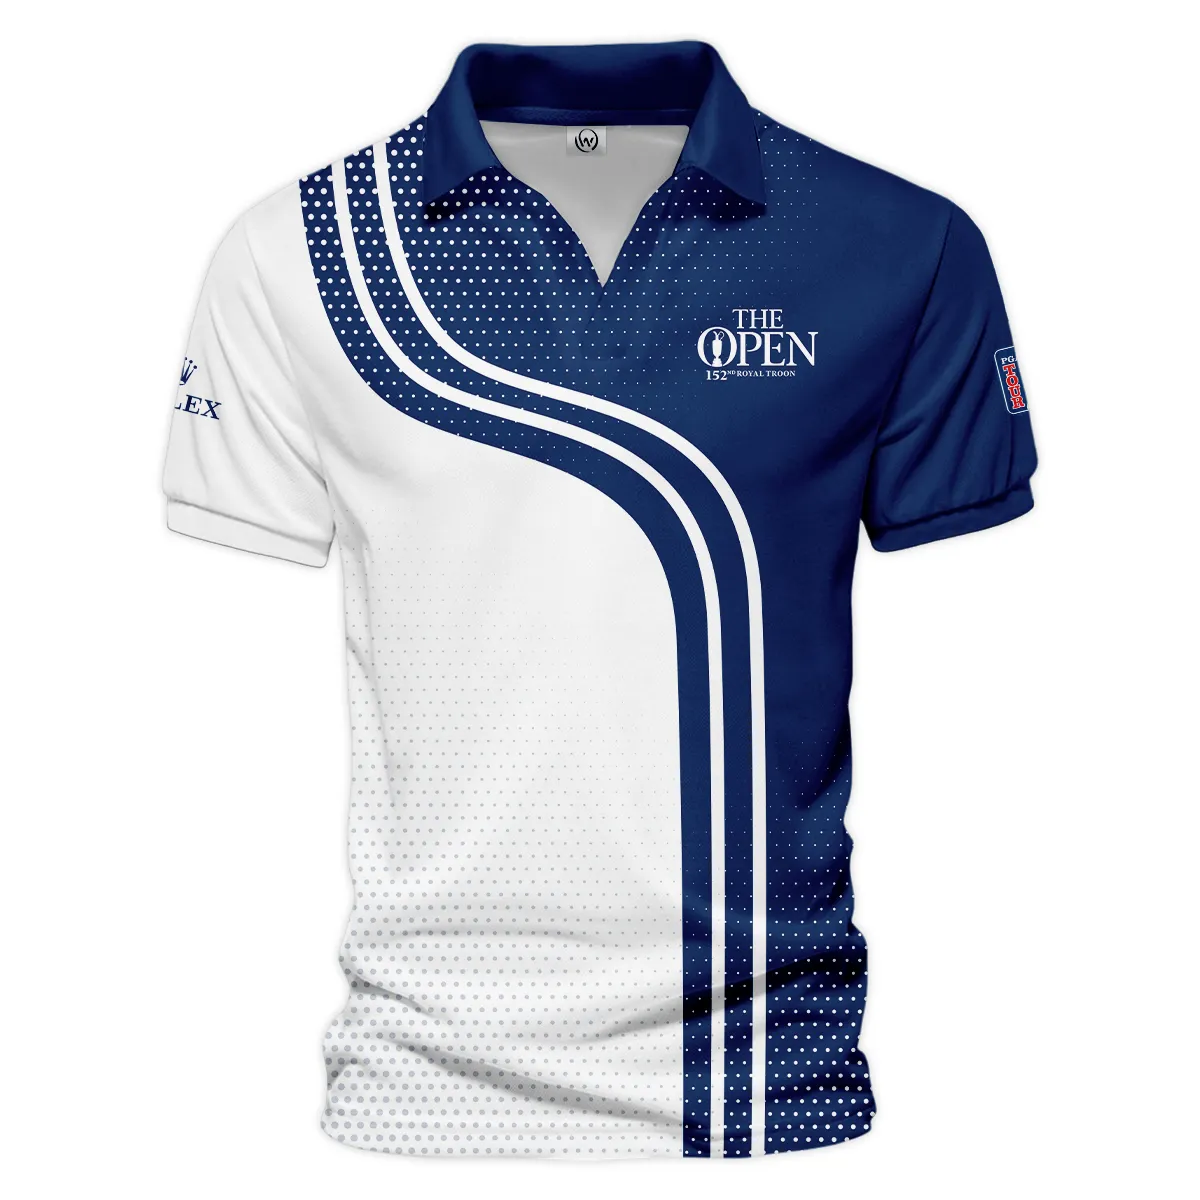 Golf Blue Mix White Sport 152nd Open Championship Pinehurst Rolex Vneck Polo Shirt All Over Prints  QTTOP1806A1ROXZVPL